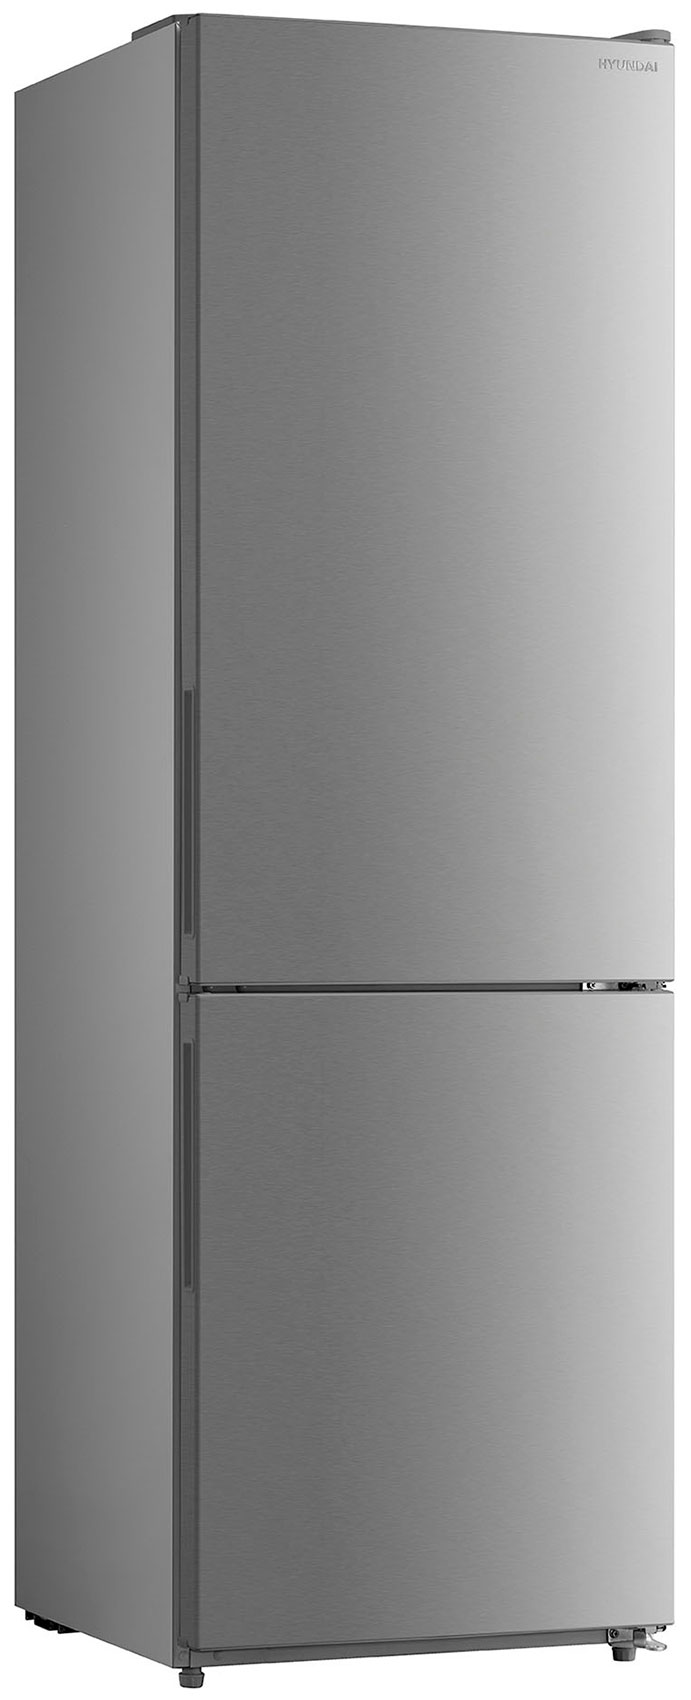 Двухкамерный холодильник Hyundai CC3093FIX нержавеющая сталь двухкамерный холодильник hyundai cc3593fwt белый